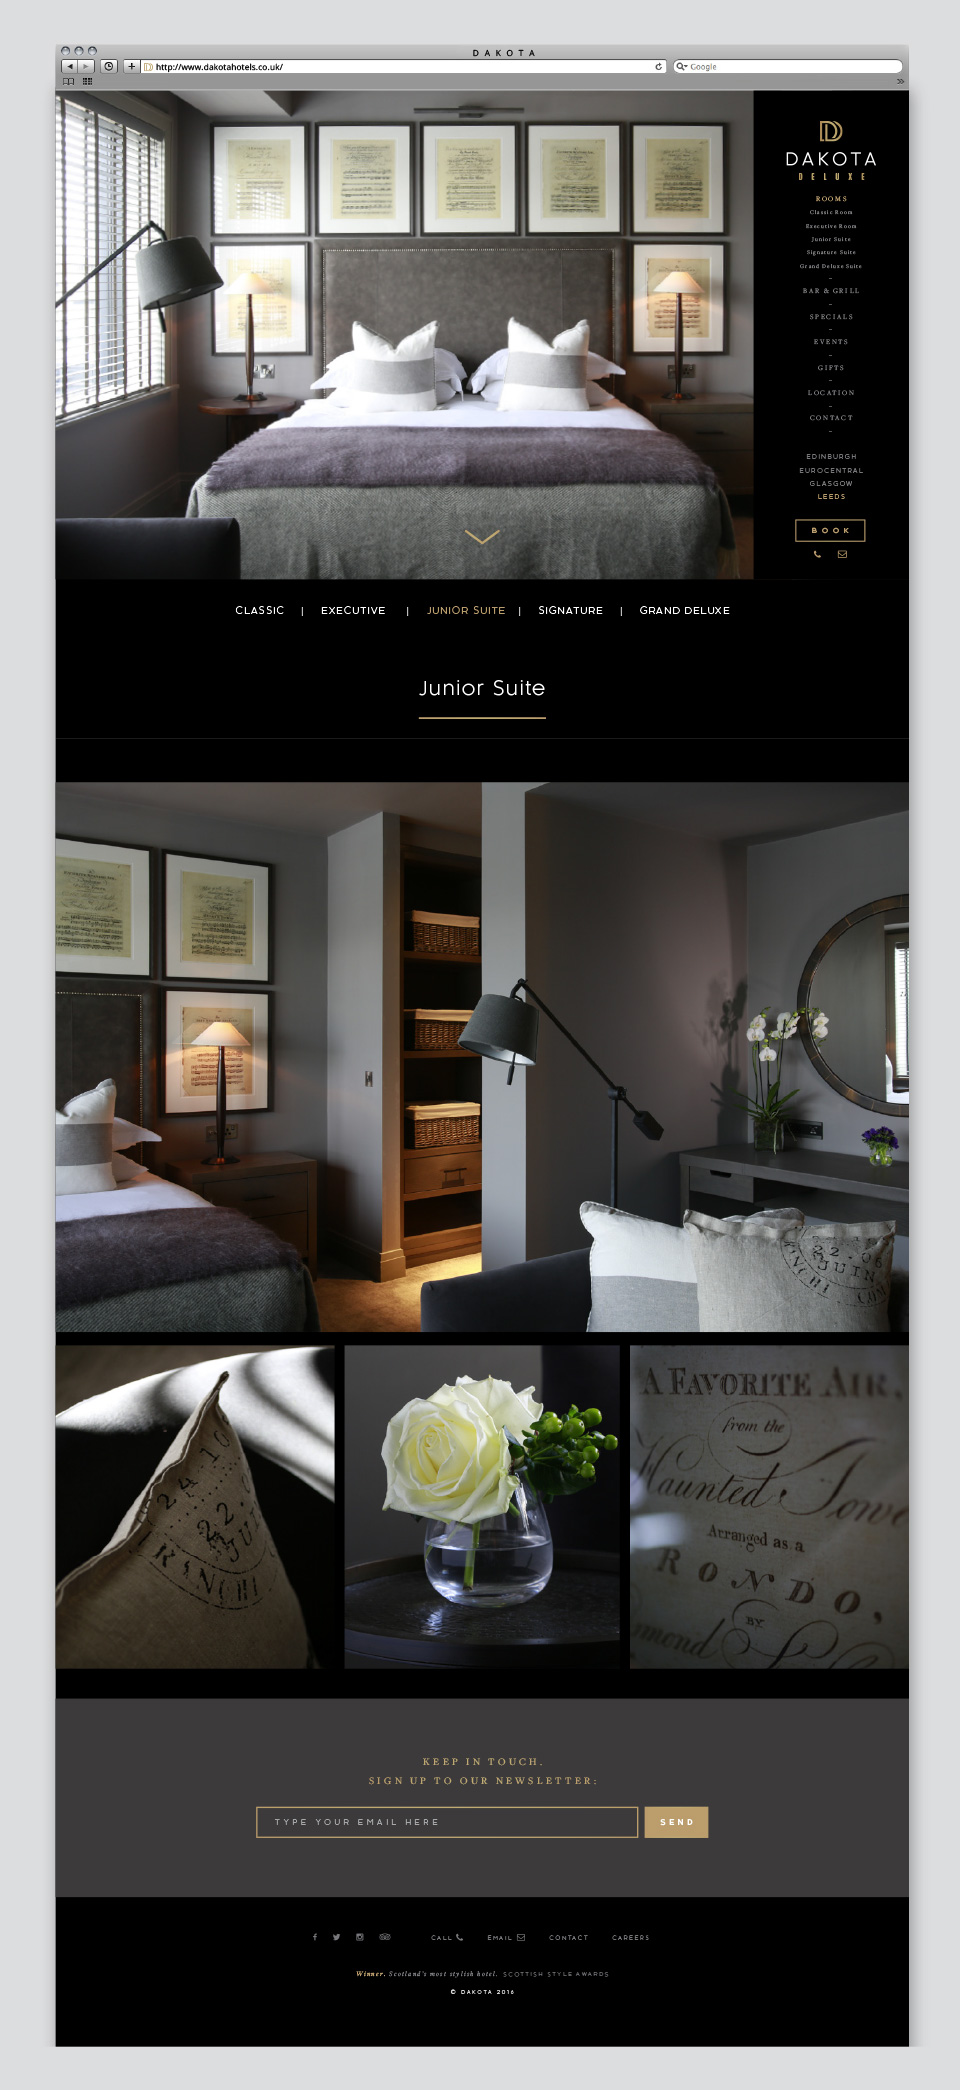 Dakota Hotels Website Design